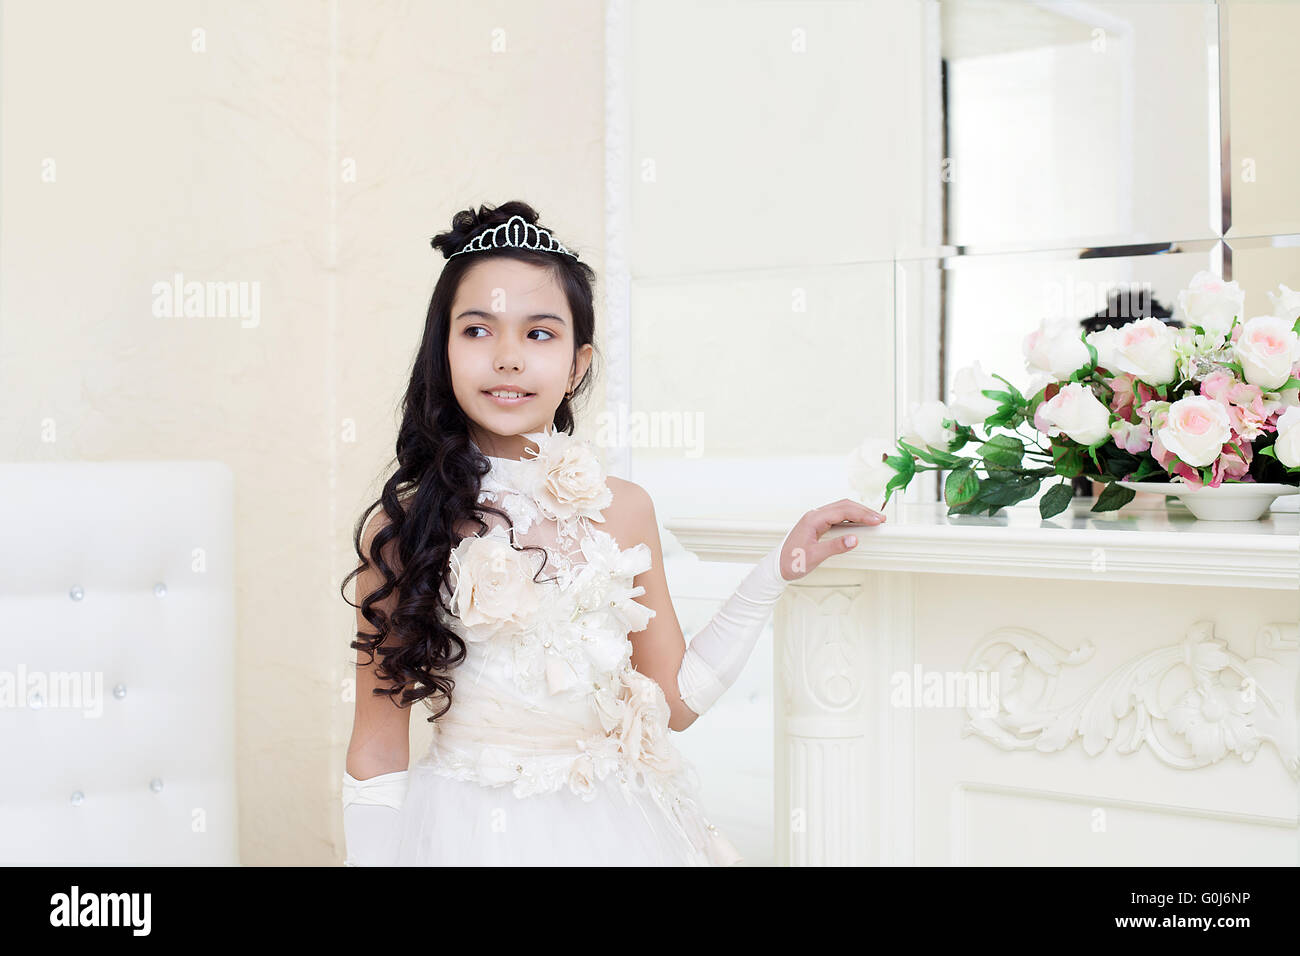 Lovely tanned girl posing in elegant white dress Stock Photo